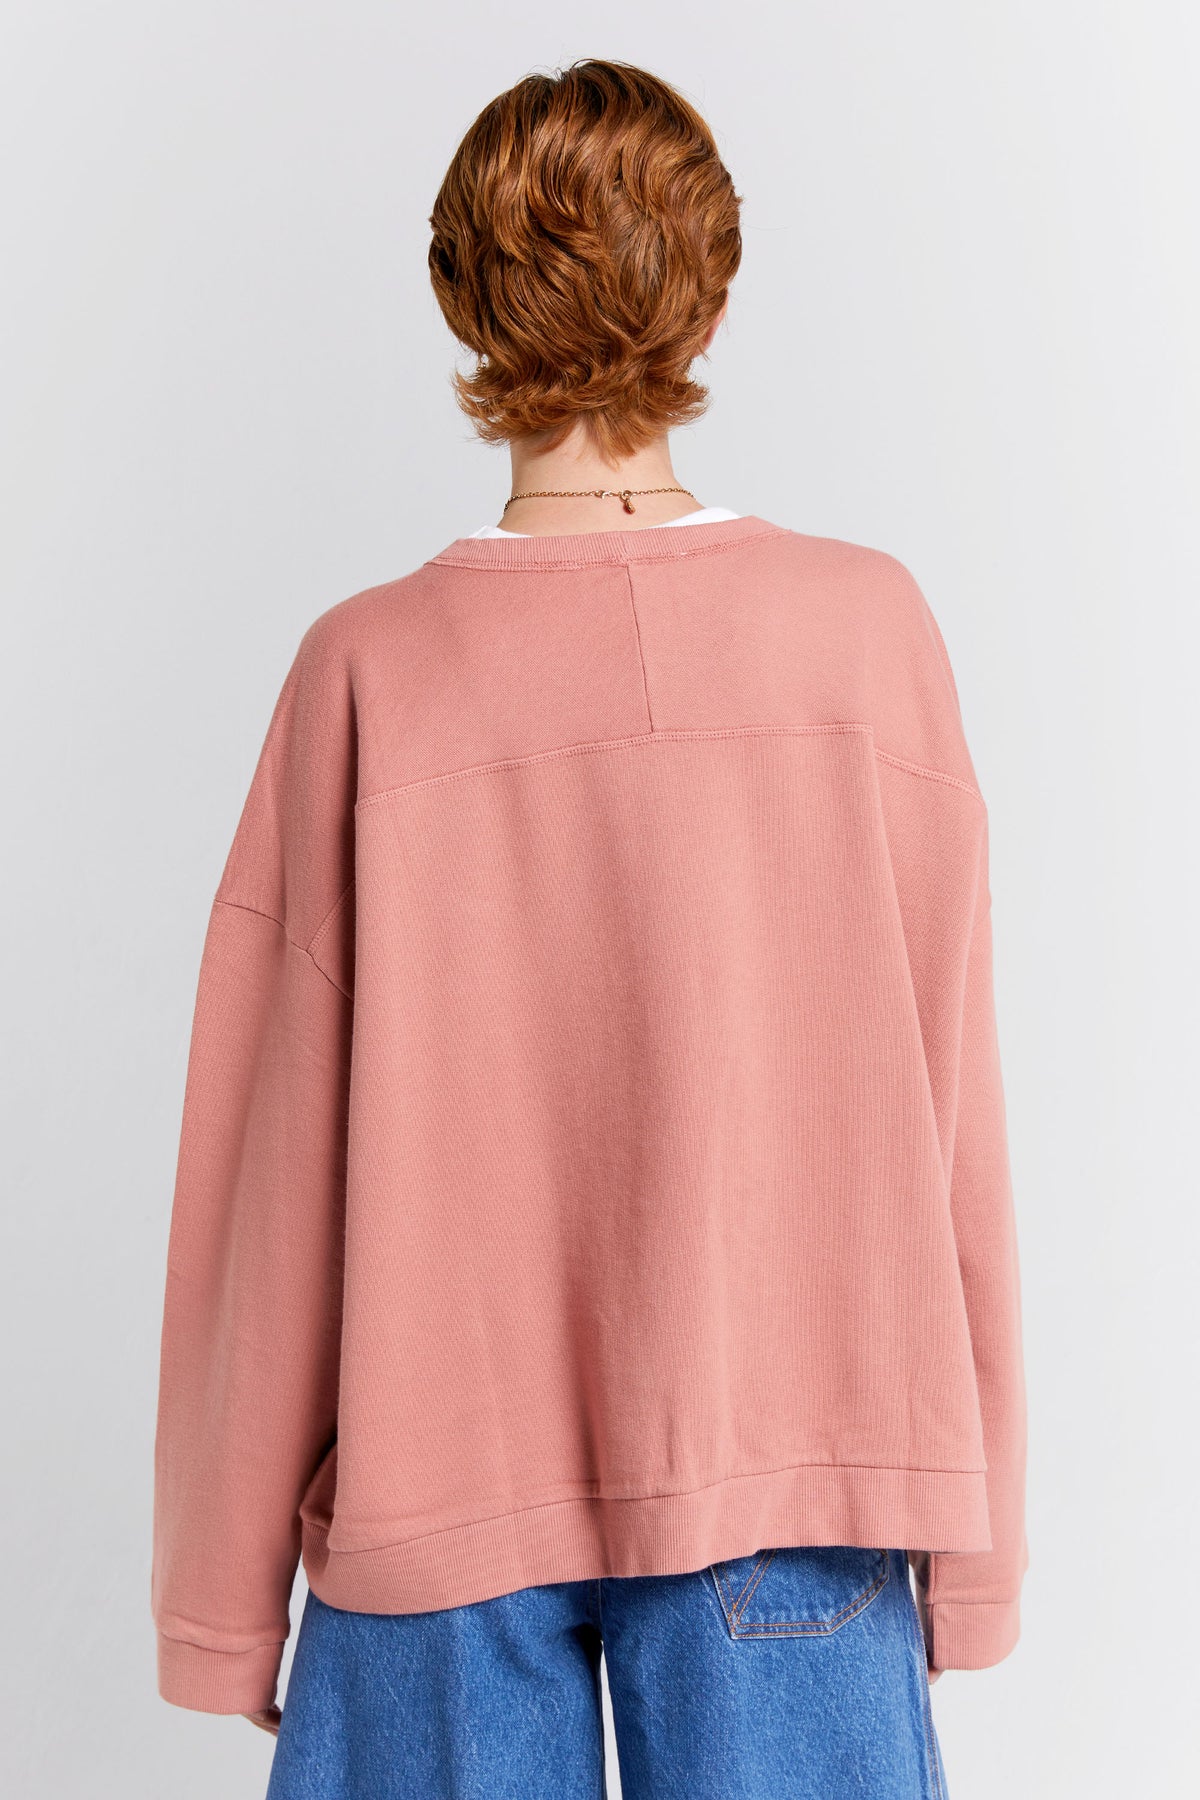 Karen Walker Embroidered Runaway Girl Sweatshirt // Rose